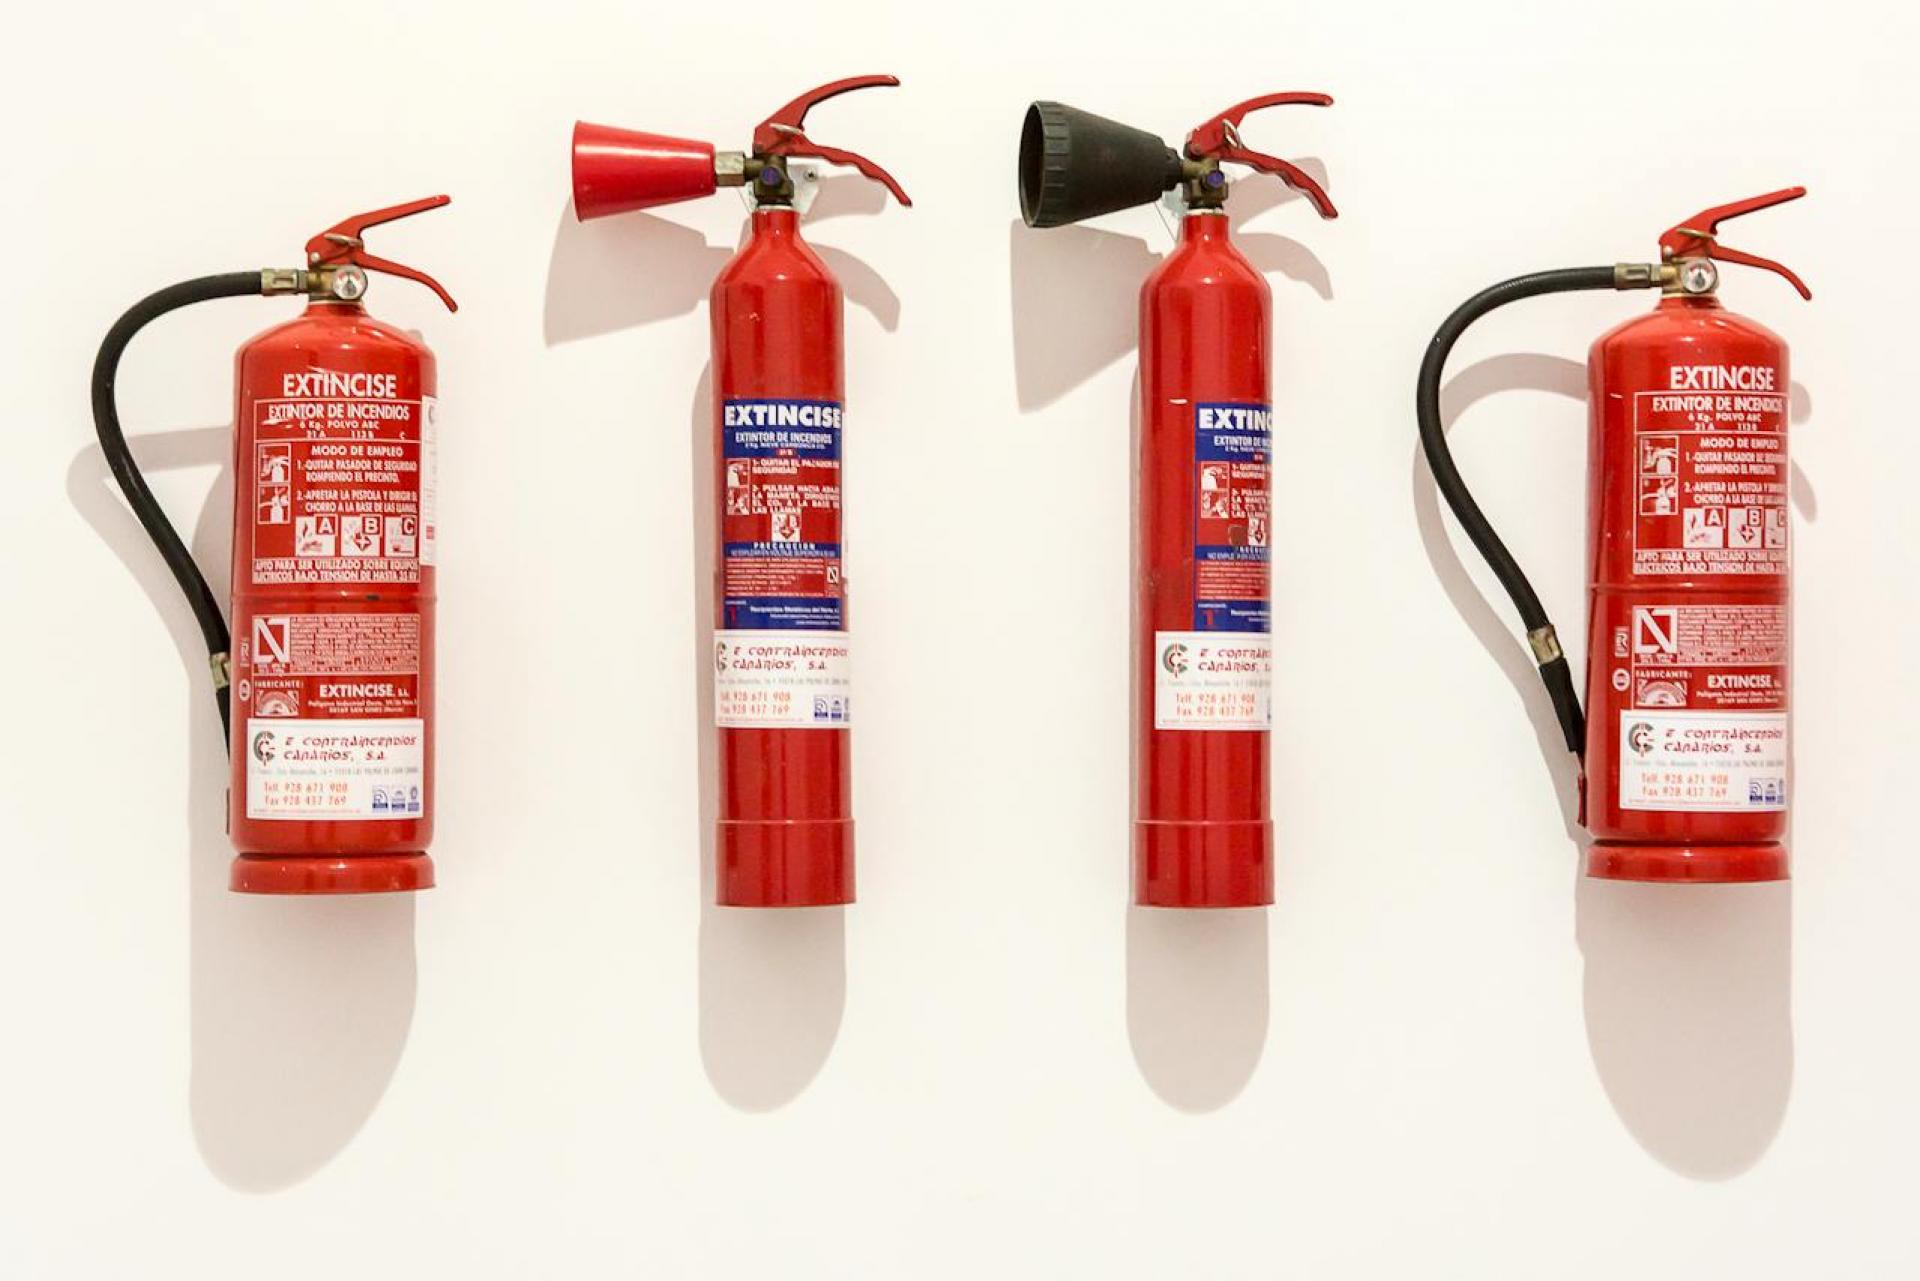 Obrázek na kterém jsou zachyceny 4 druhy hasicích přístrojů